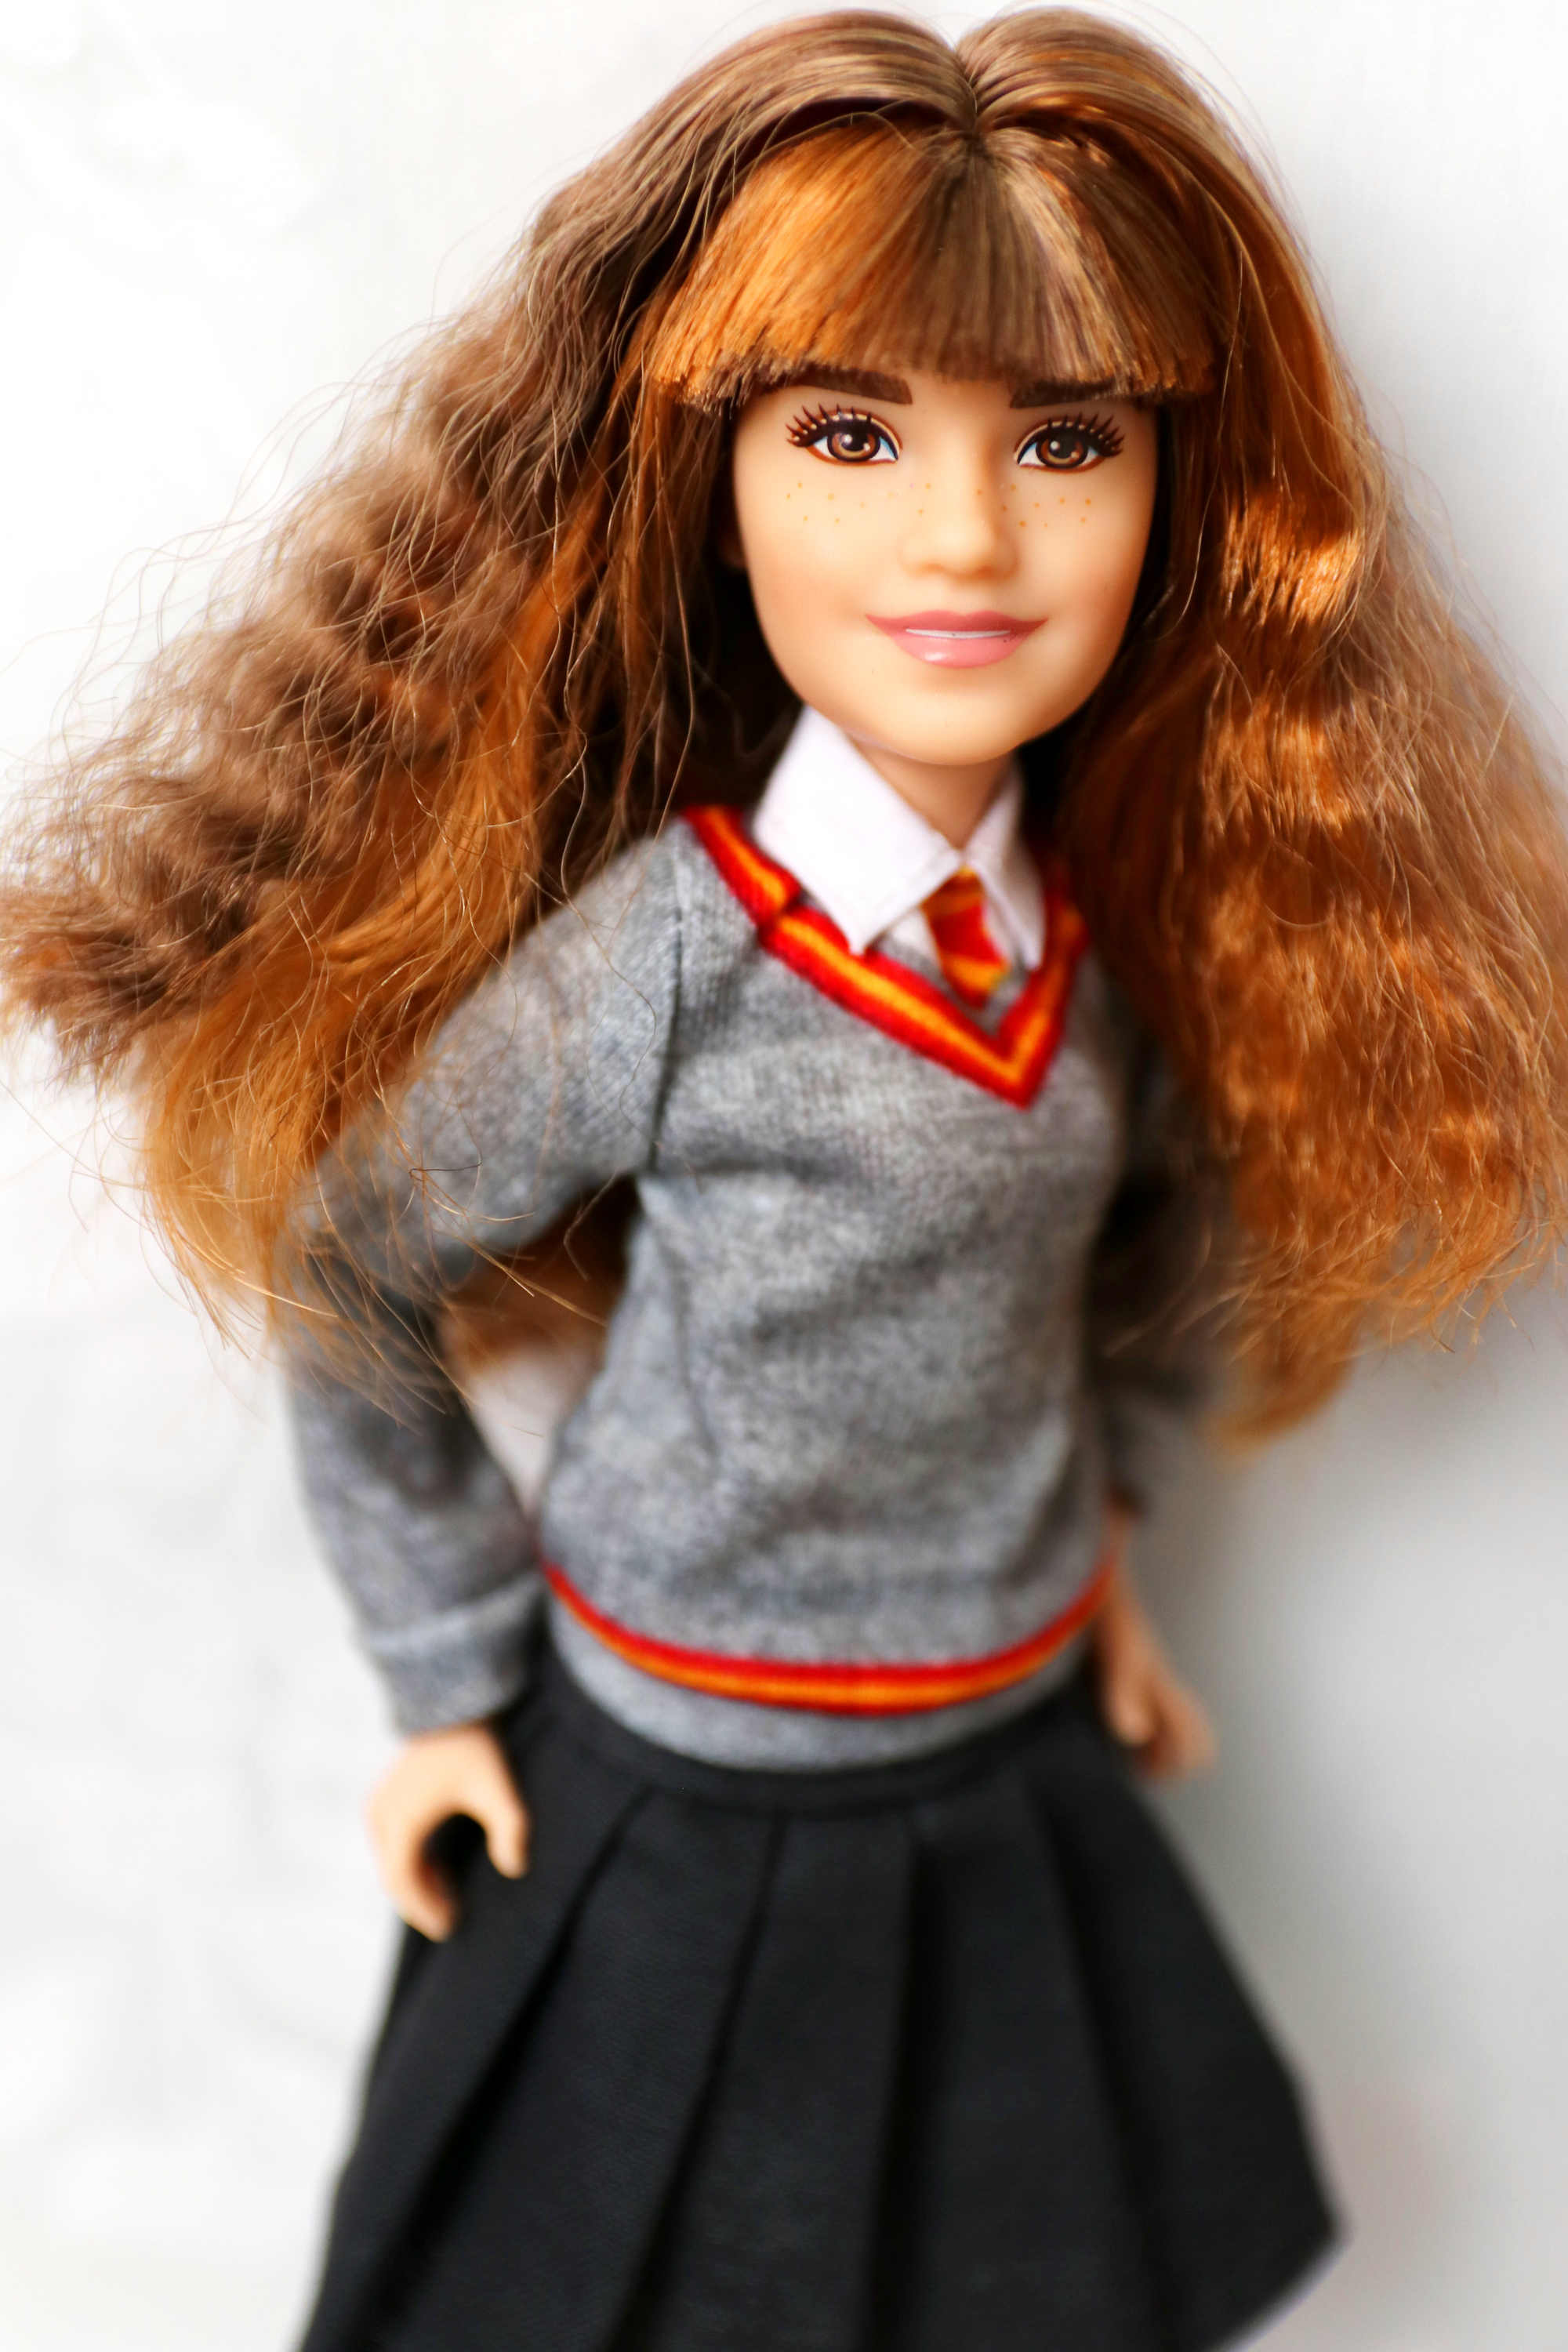 Harry Potter Hermoine Granger Doll Mattel FYM51